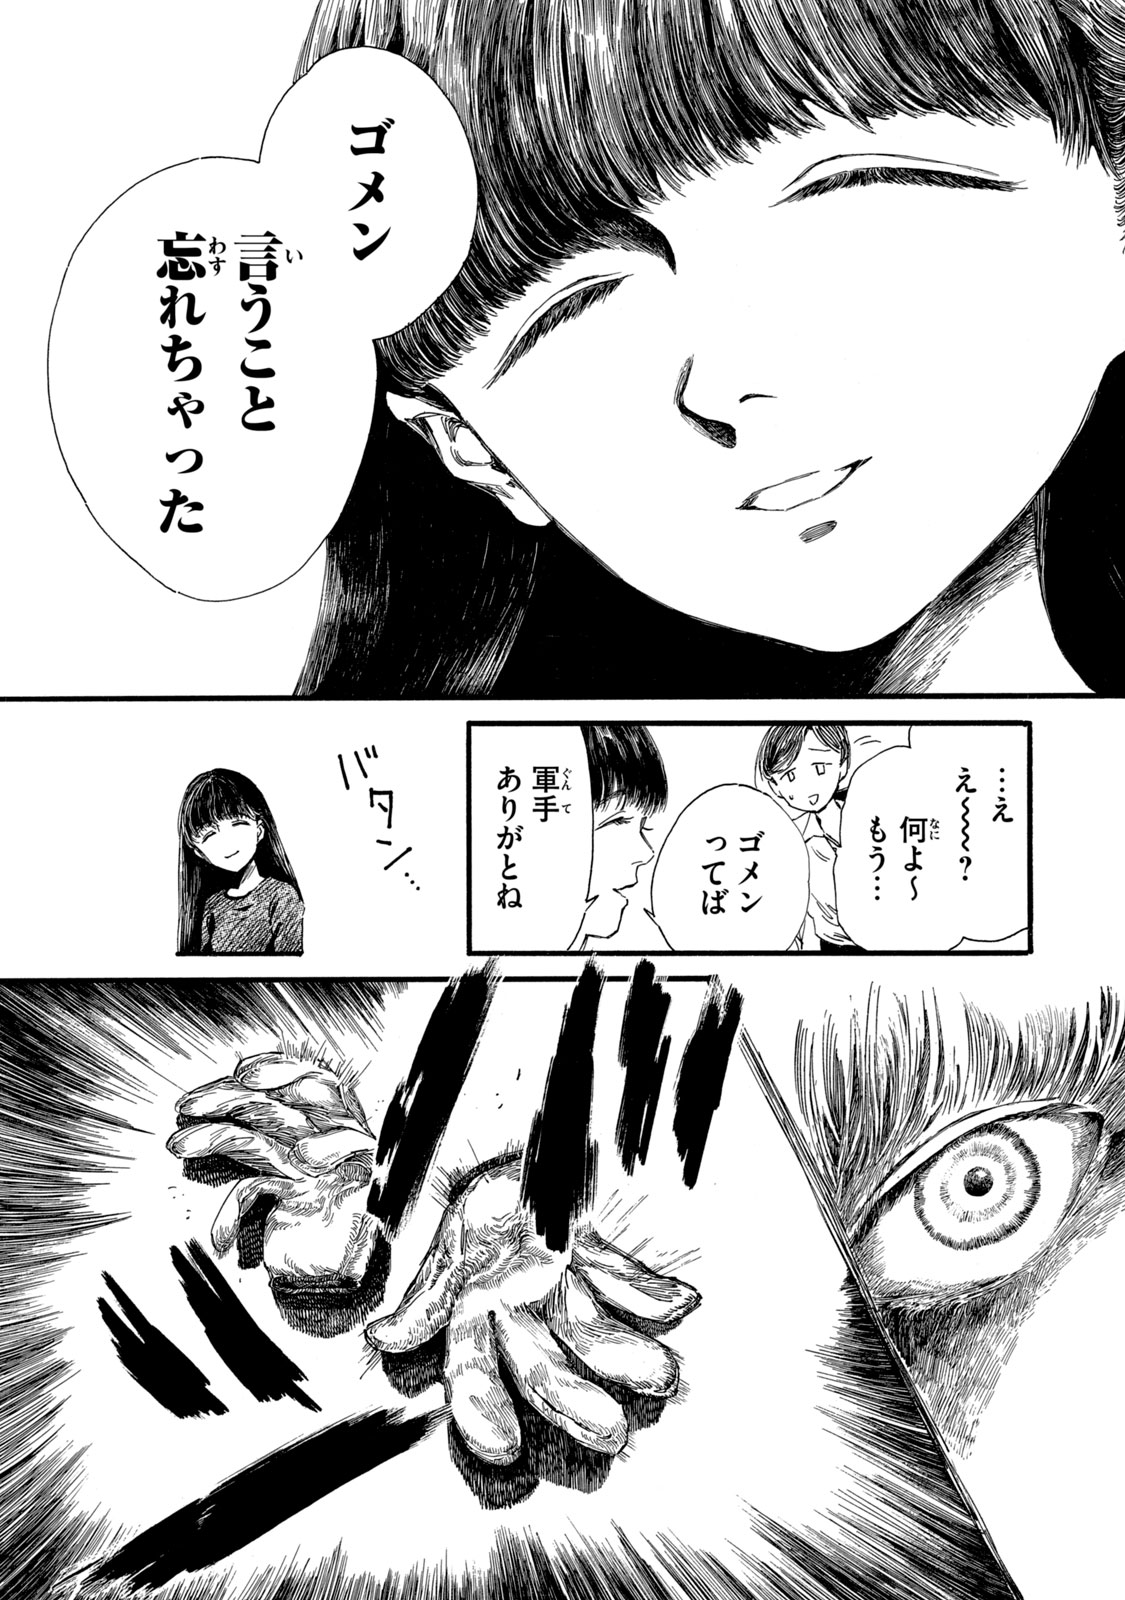 Watashi no Hara no Naka no Bakemono - Chapter 15 - Page 3